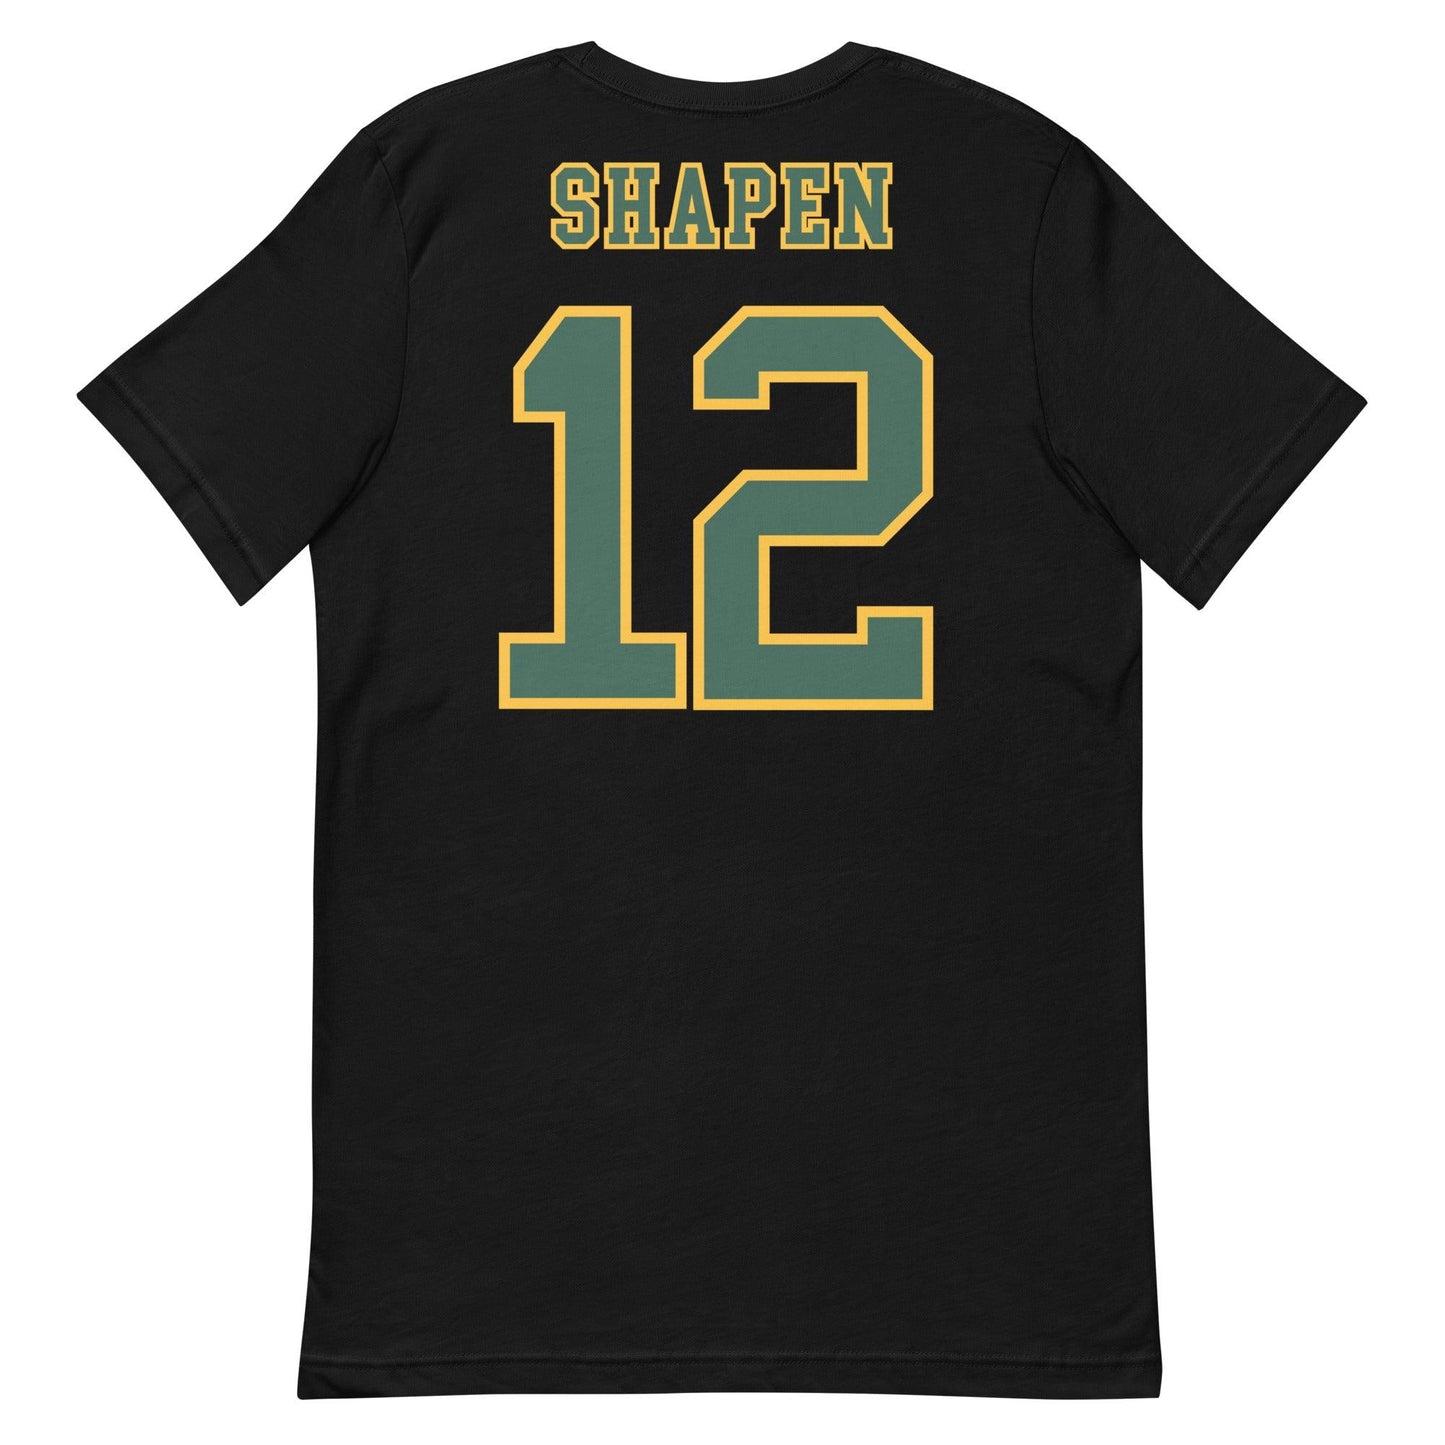 Blake Shapen "Jersey" t-shirt - Fan Arch